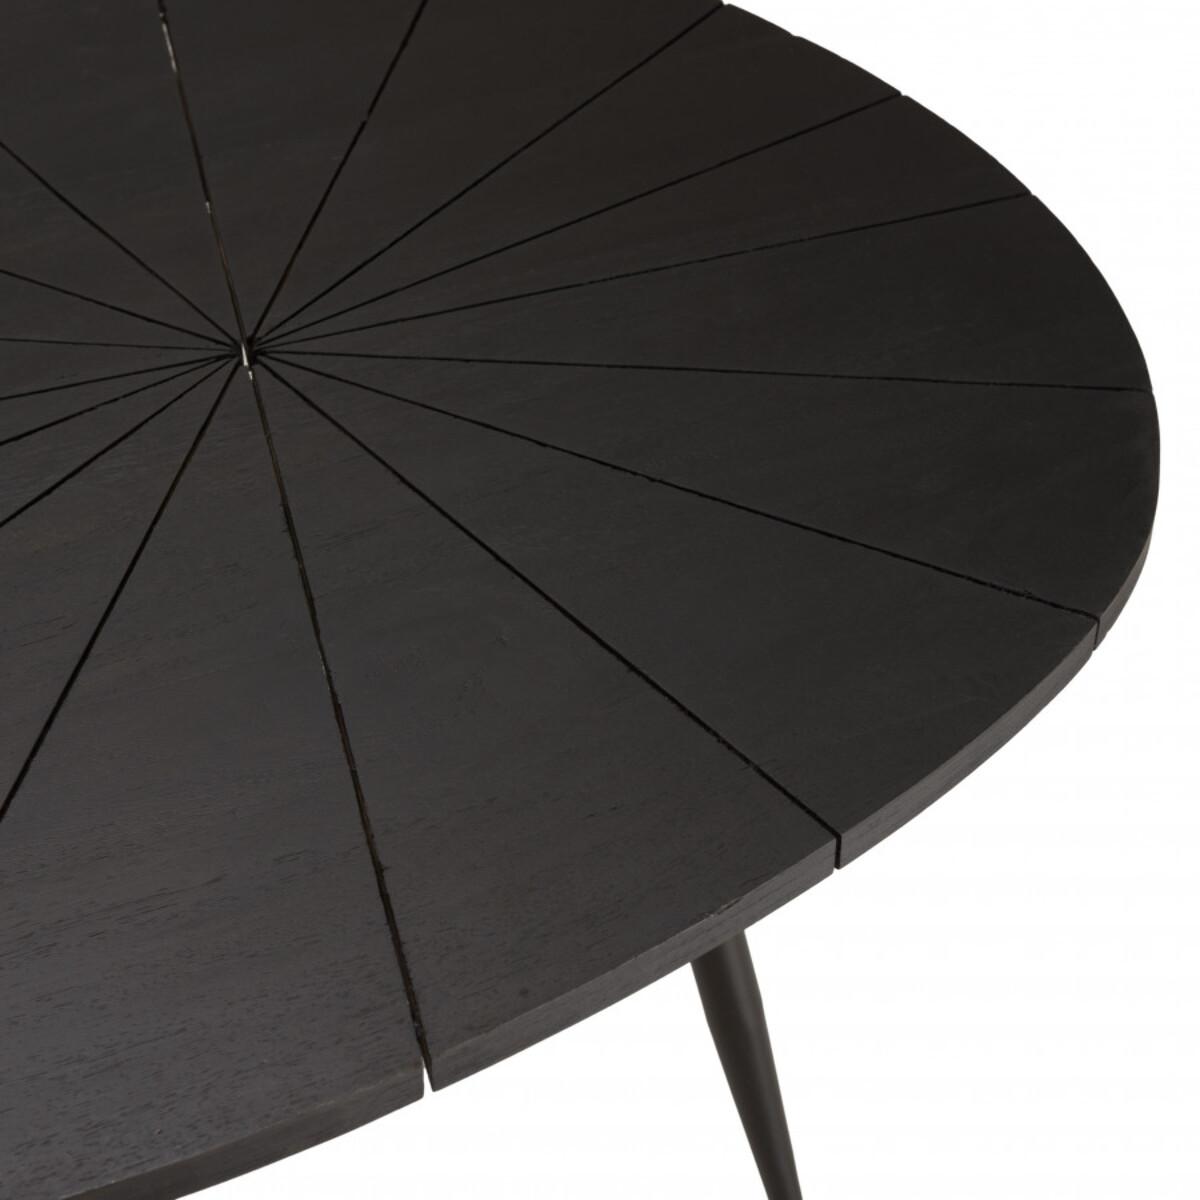 JAMES - Table basse ovoïde plateau texturé noir mat pieds en fer noir